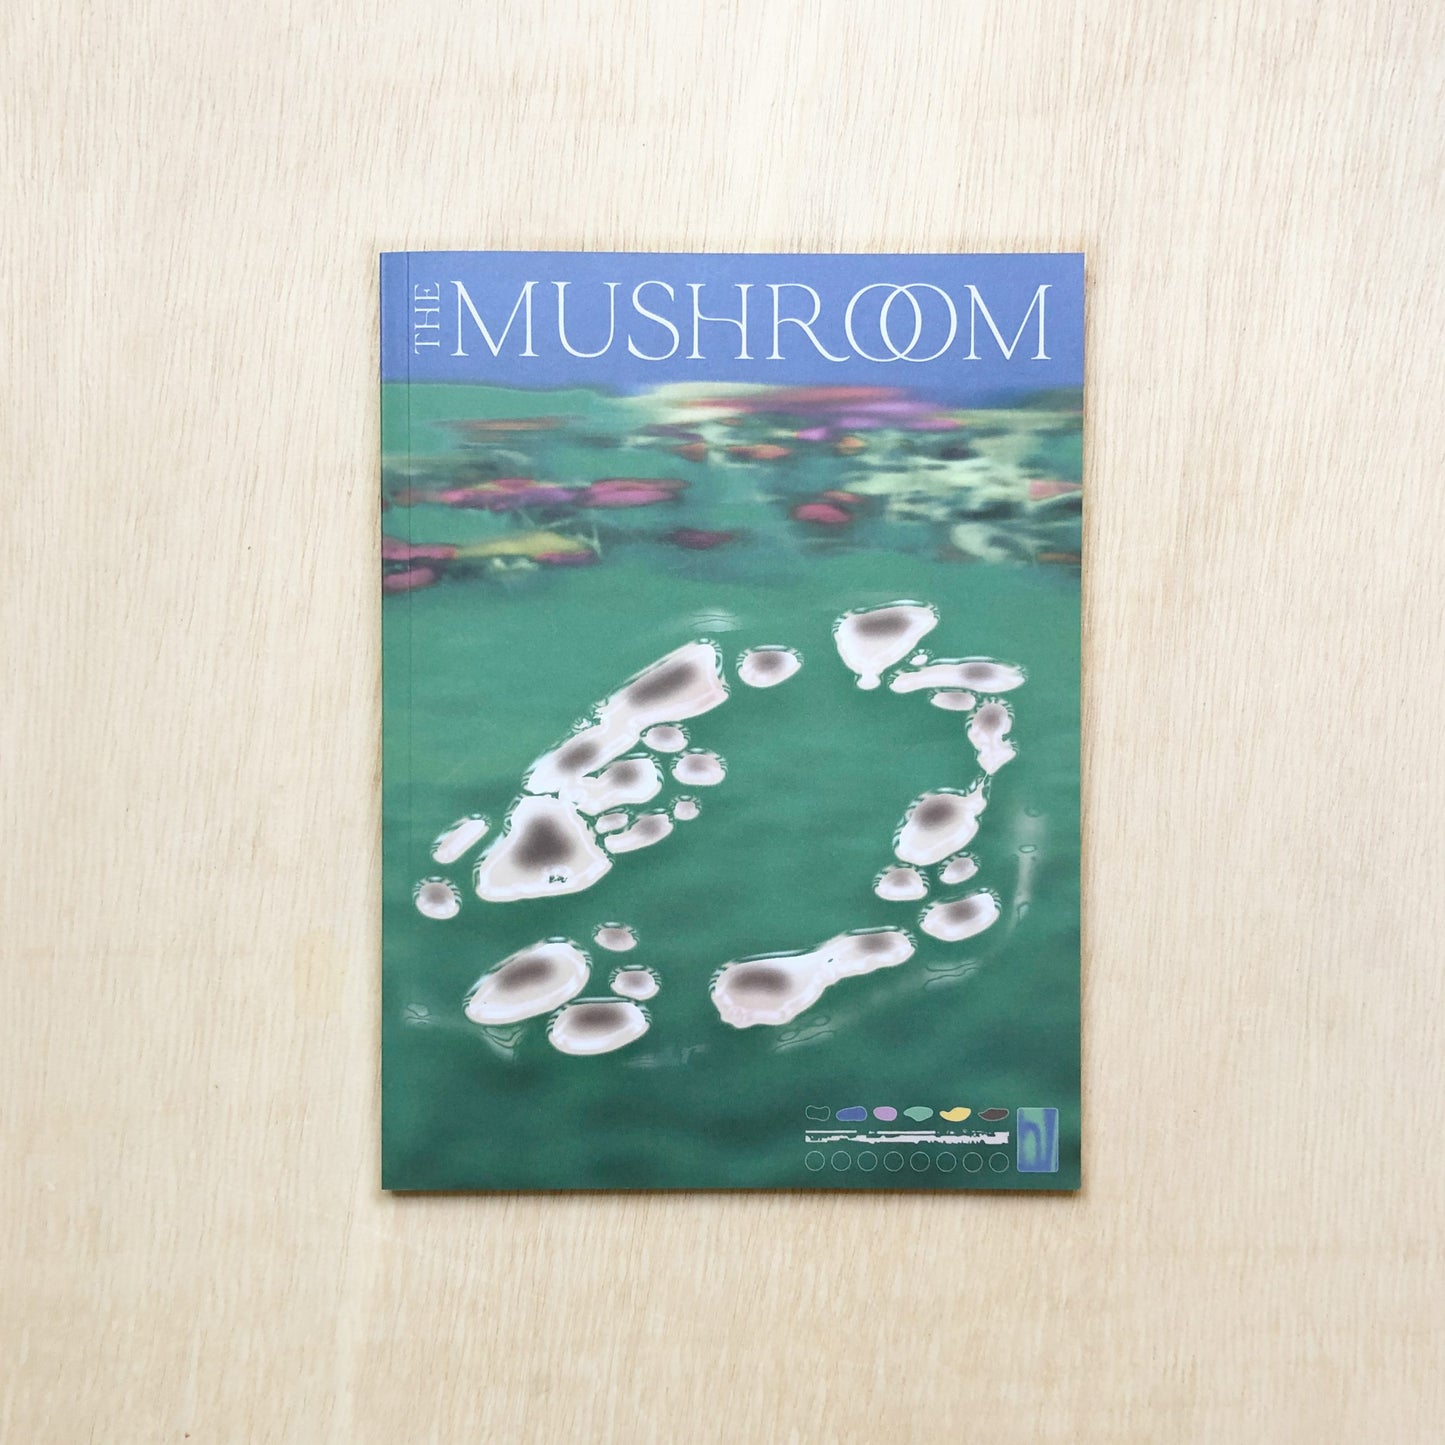 The Mushroom - Issue 02